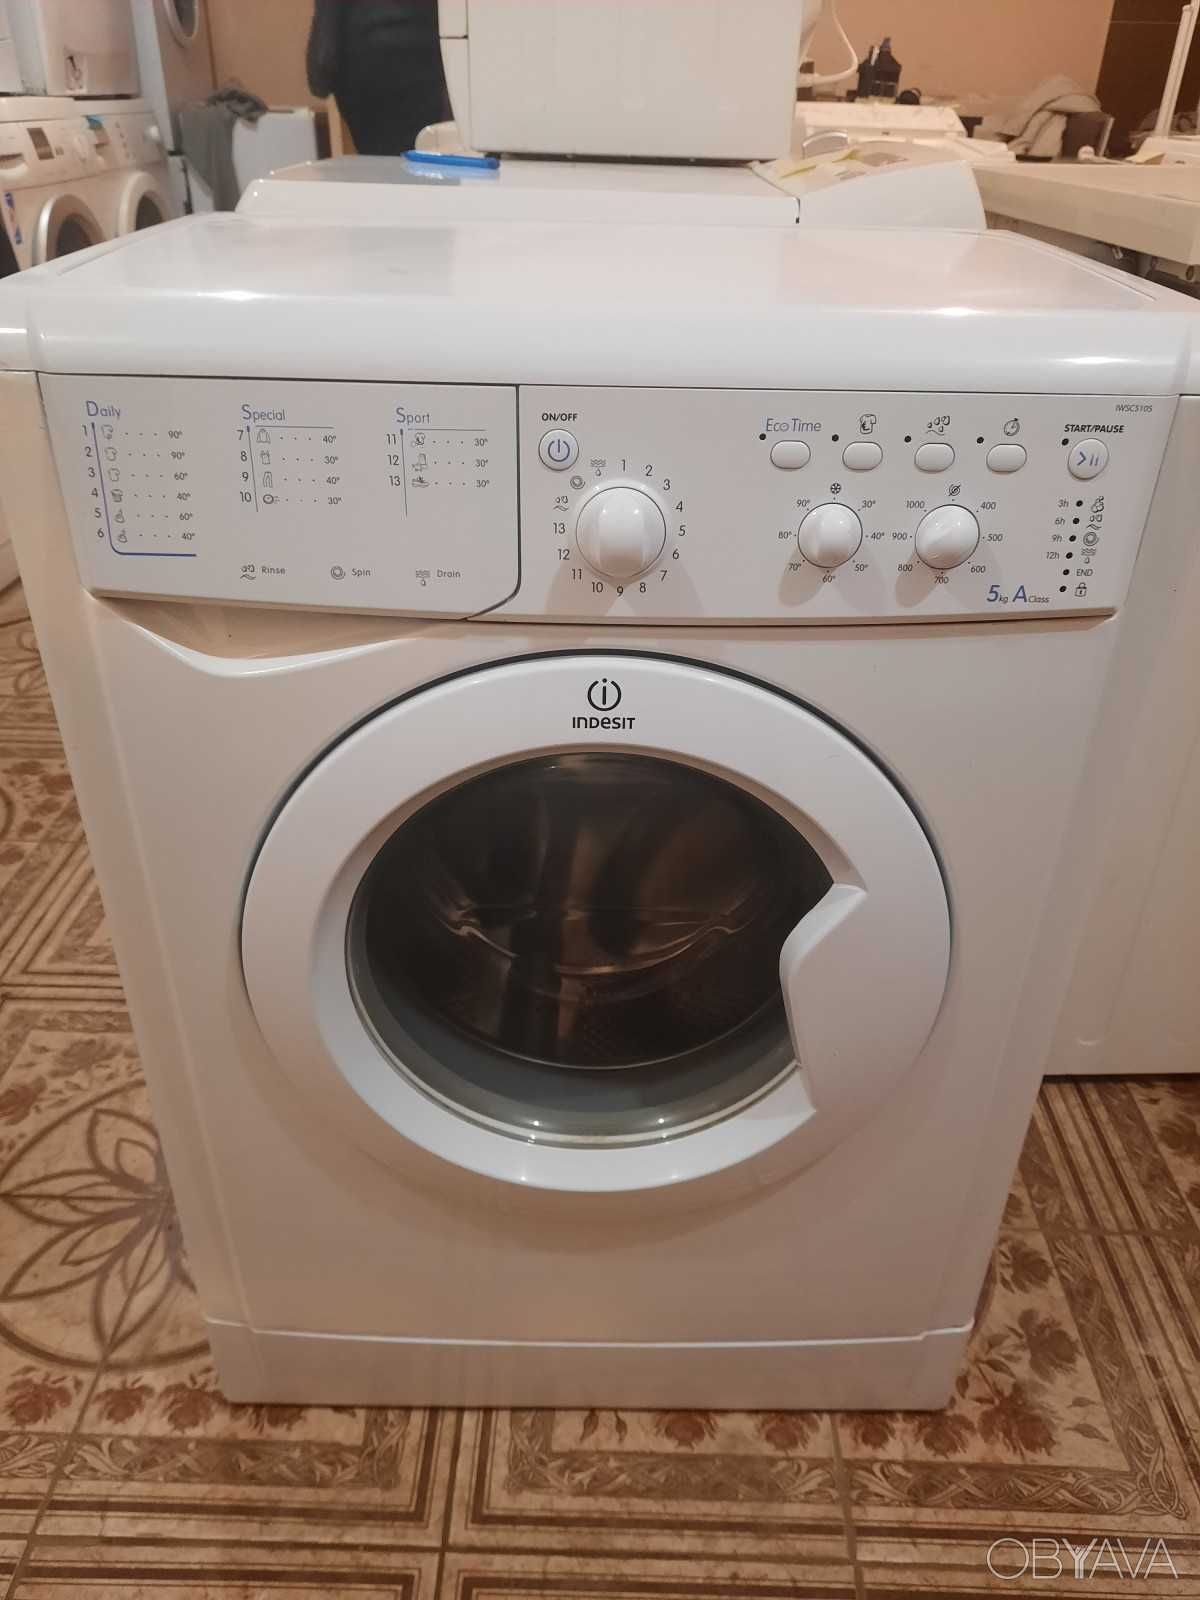 надійні та якісні пральні машини бу з гарантією до 6 місяців!